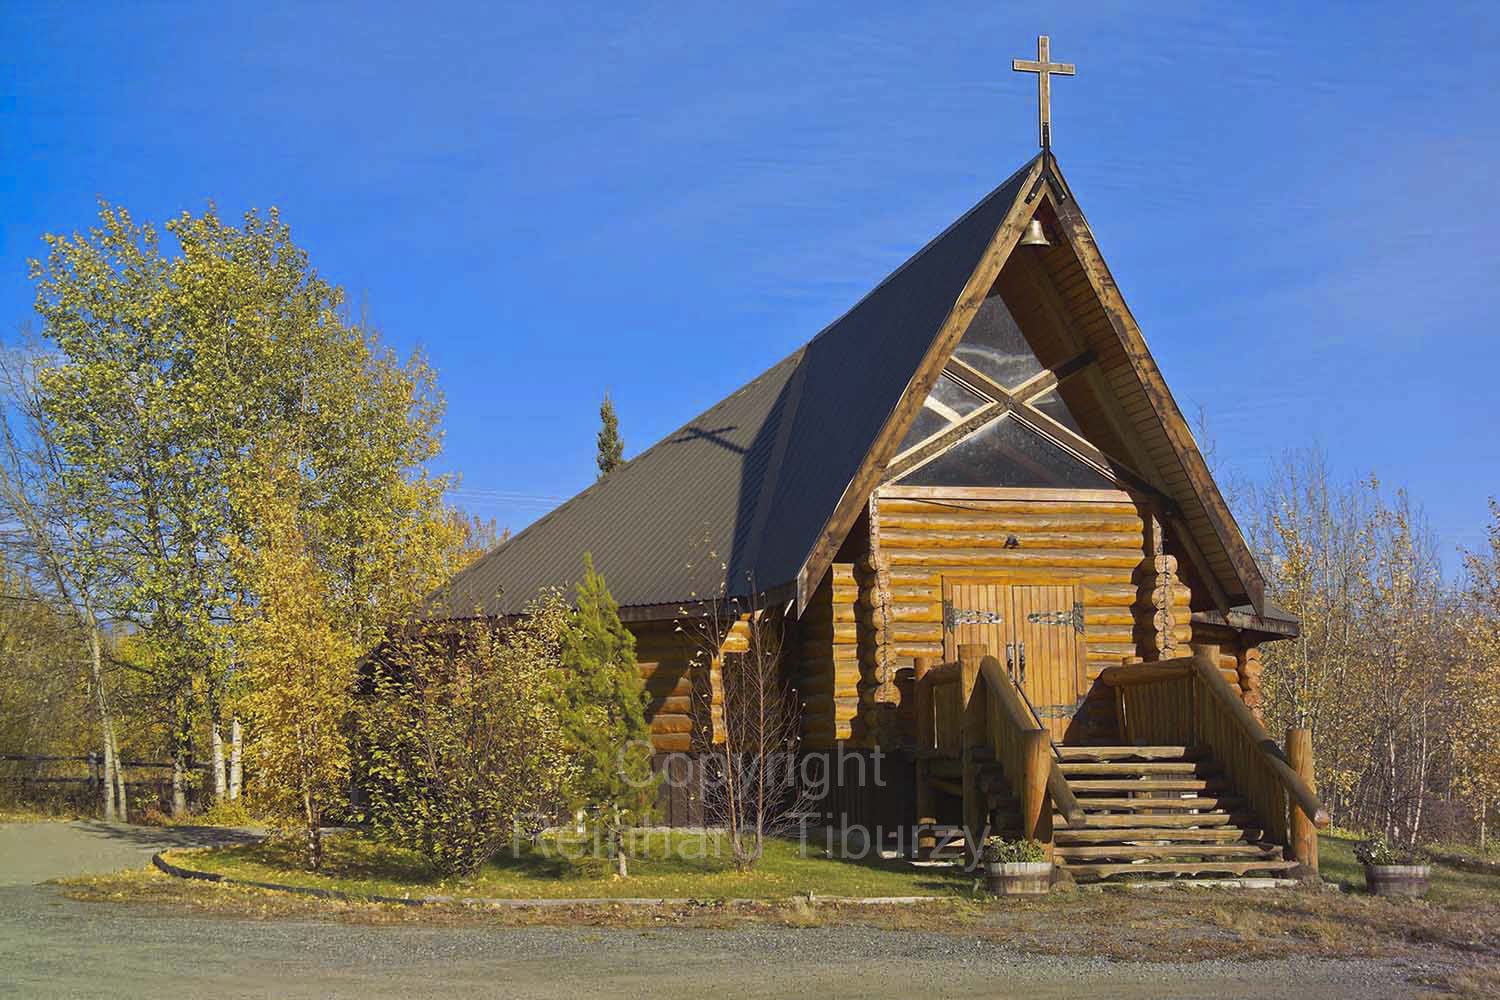 Saint Christopher’s Church, an eight-sided log church built around 1990 on Alaska Highway, Haines Junction, Yukon, Canada 